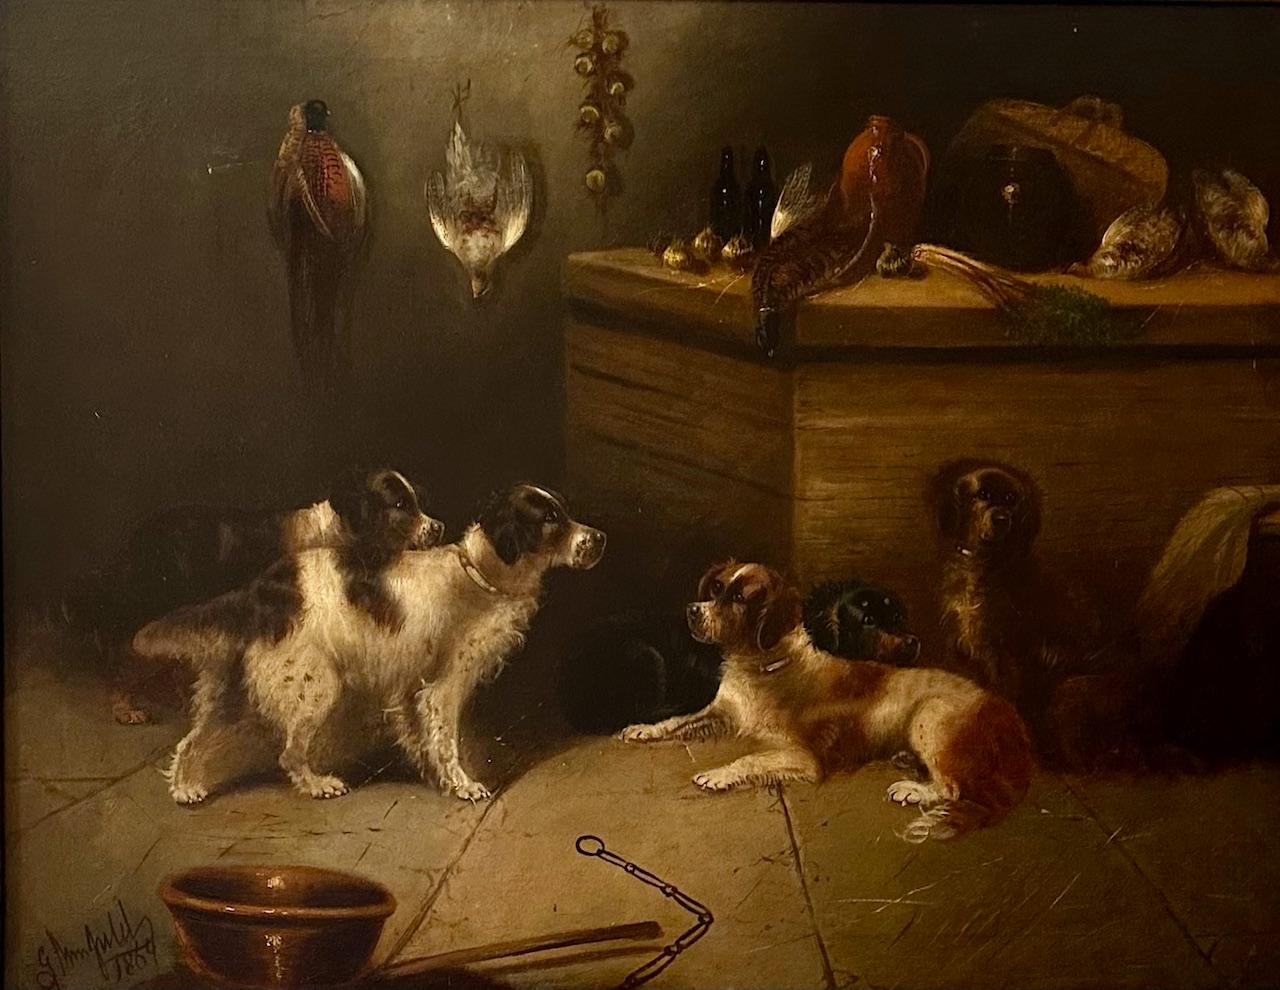 Grande peinture à l'huile anglaise du 19e siècle - Cinq chiens de chasse - signée E. Armfield.

Grande peinture signée à l'huile sur toile. Cet Armfield représente cinq chiens de chasse dans un intérieur rustique. La peinture est exécutée dans la